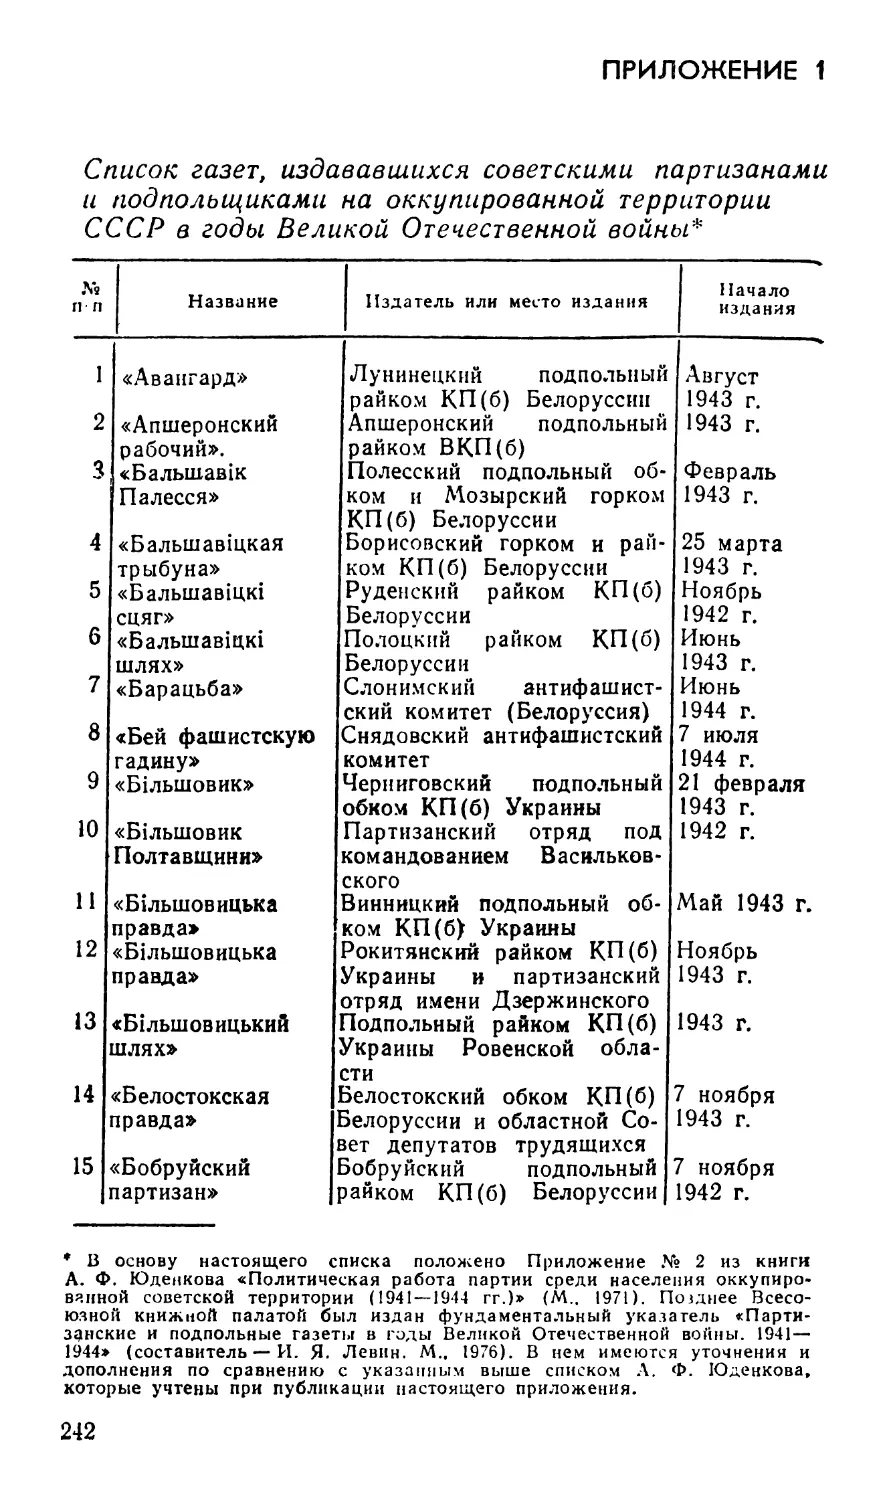 Приложения
Прил.1 Список газет, издававшихся советскими партизанами и подпольщиками